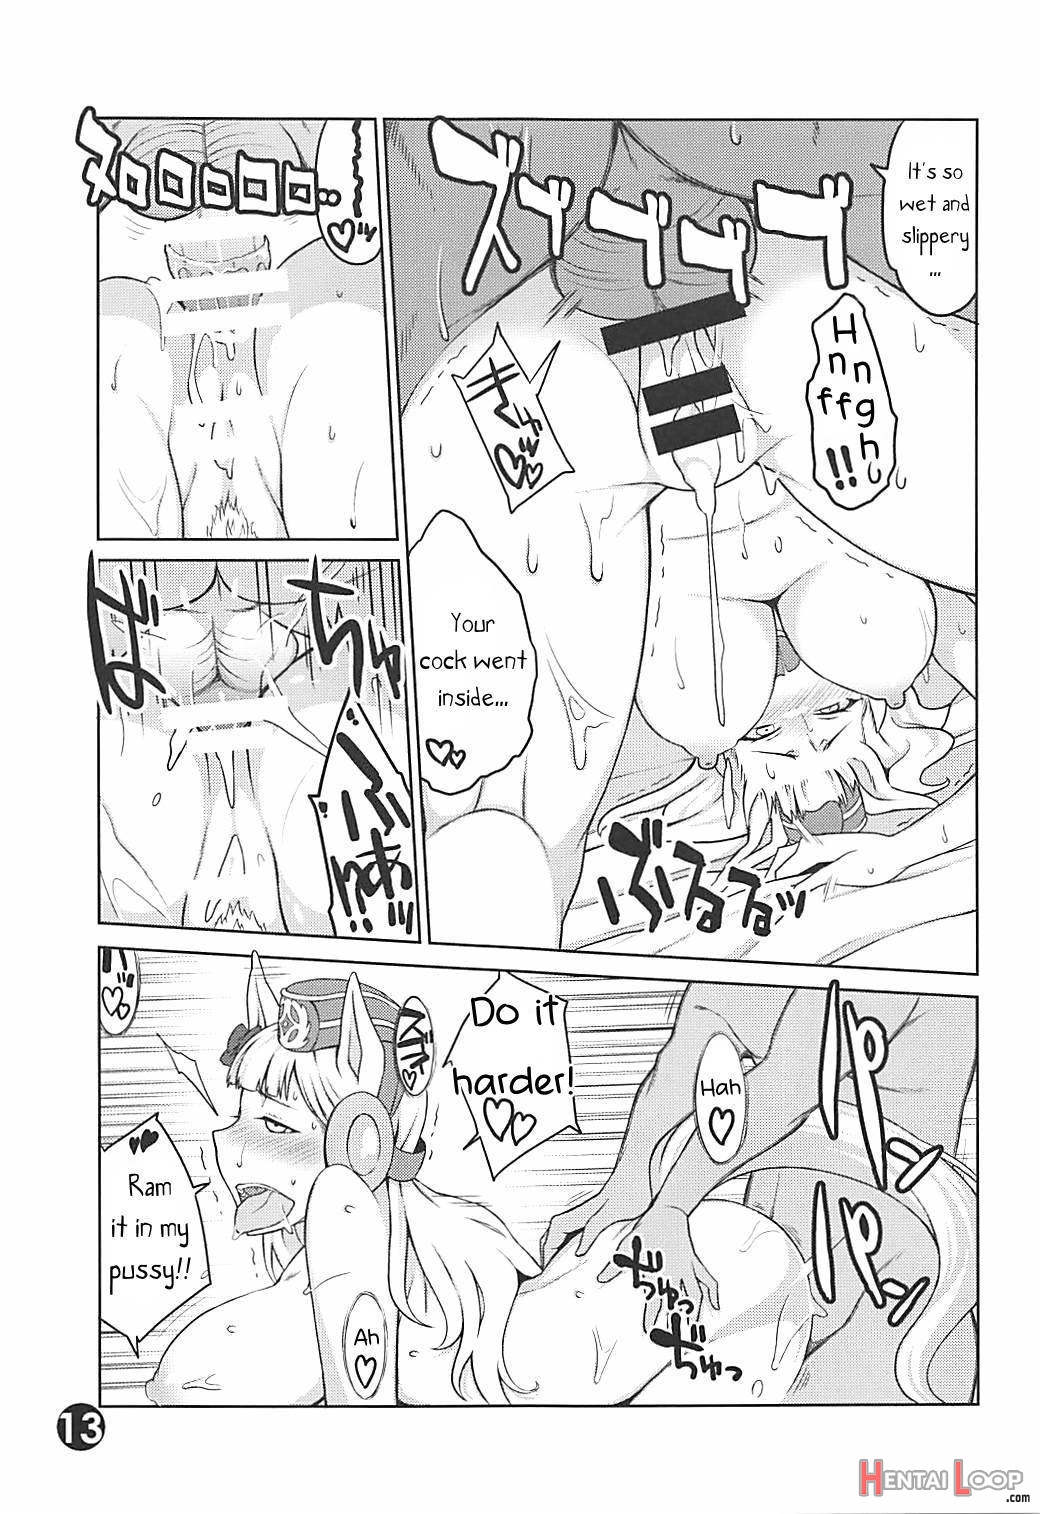 Gorushi-chan Fan Kansha Day!! page 11